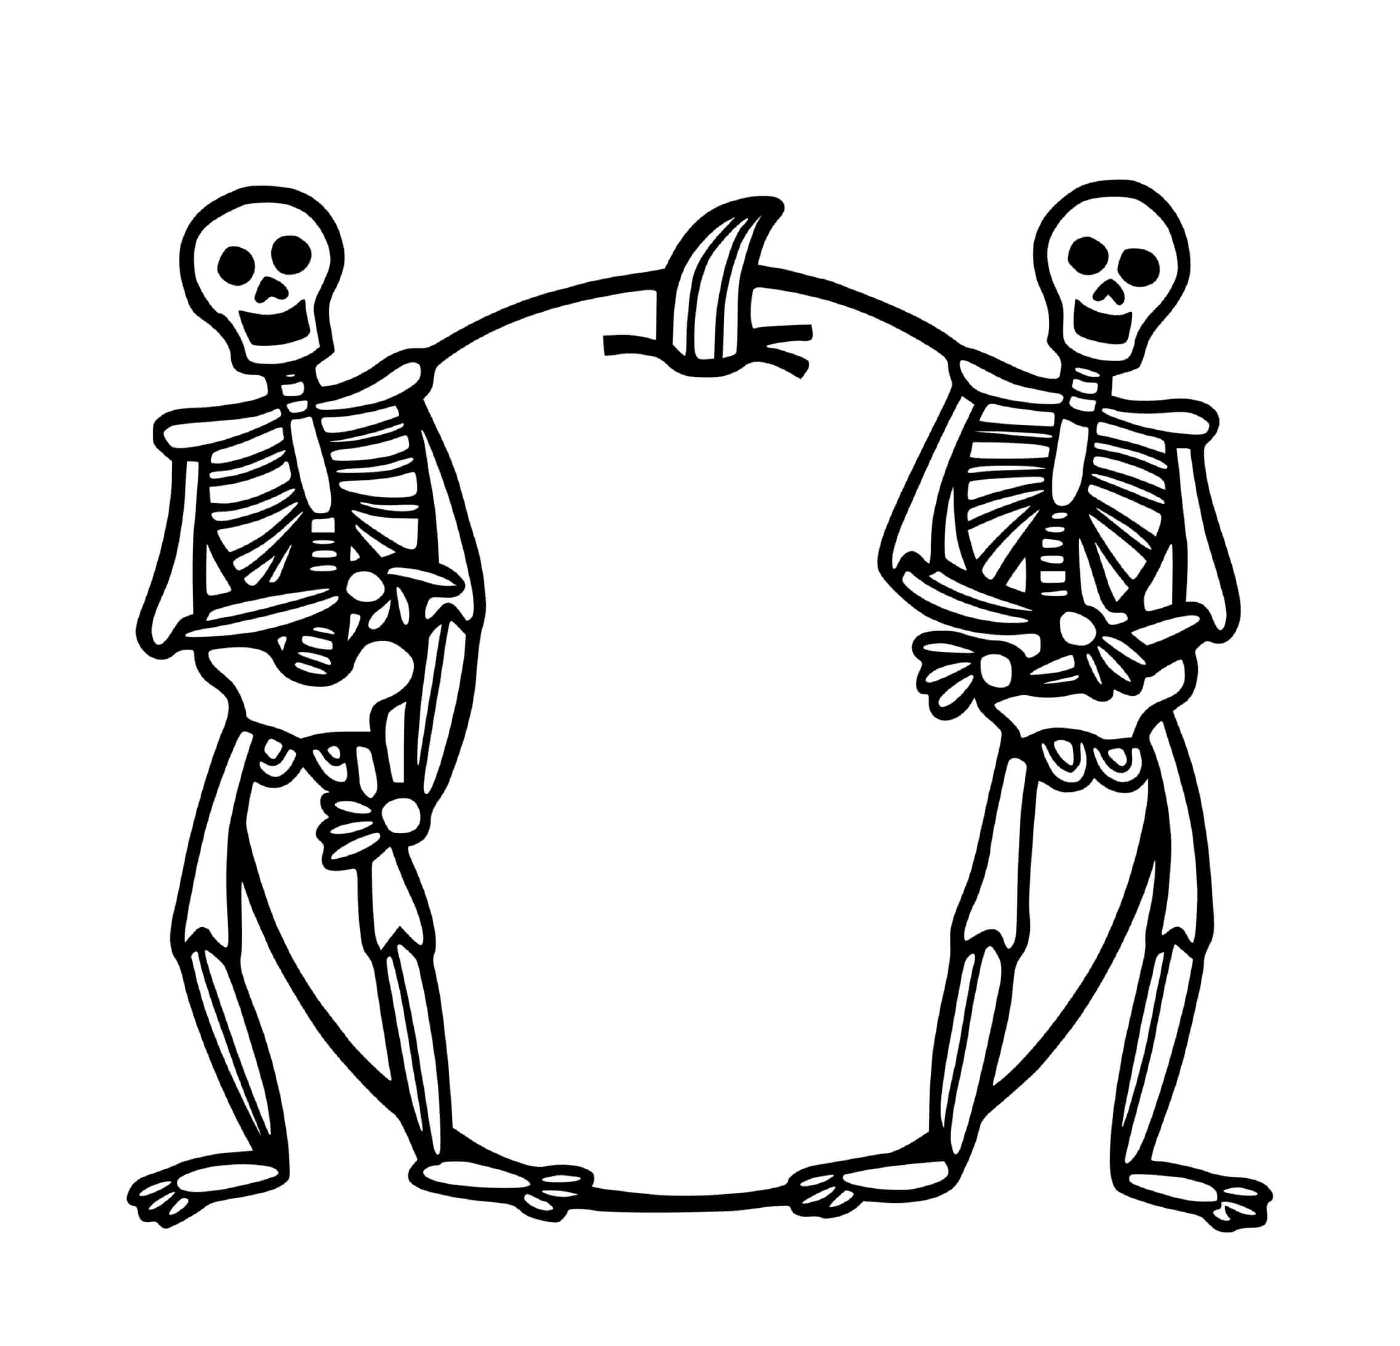  Halloween, esqueleto, de pie junto a la mano 